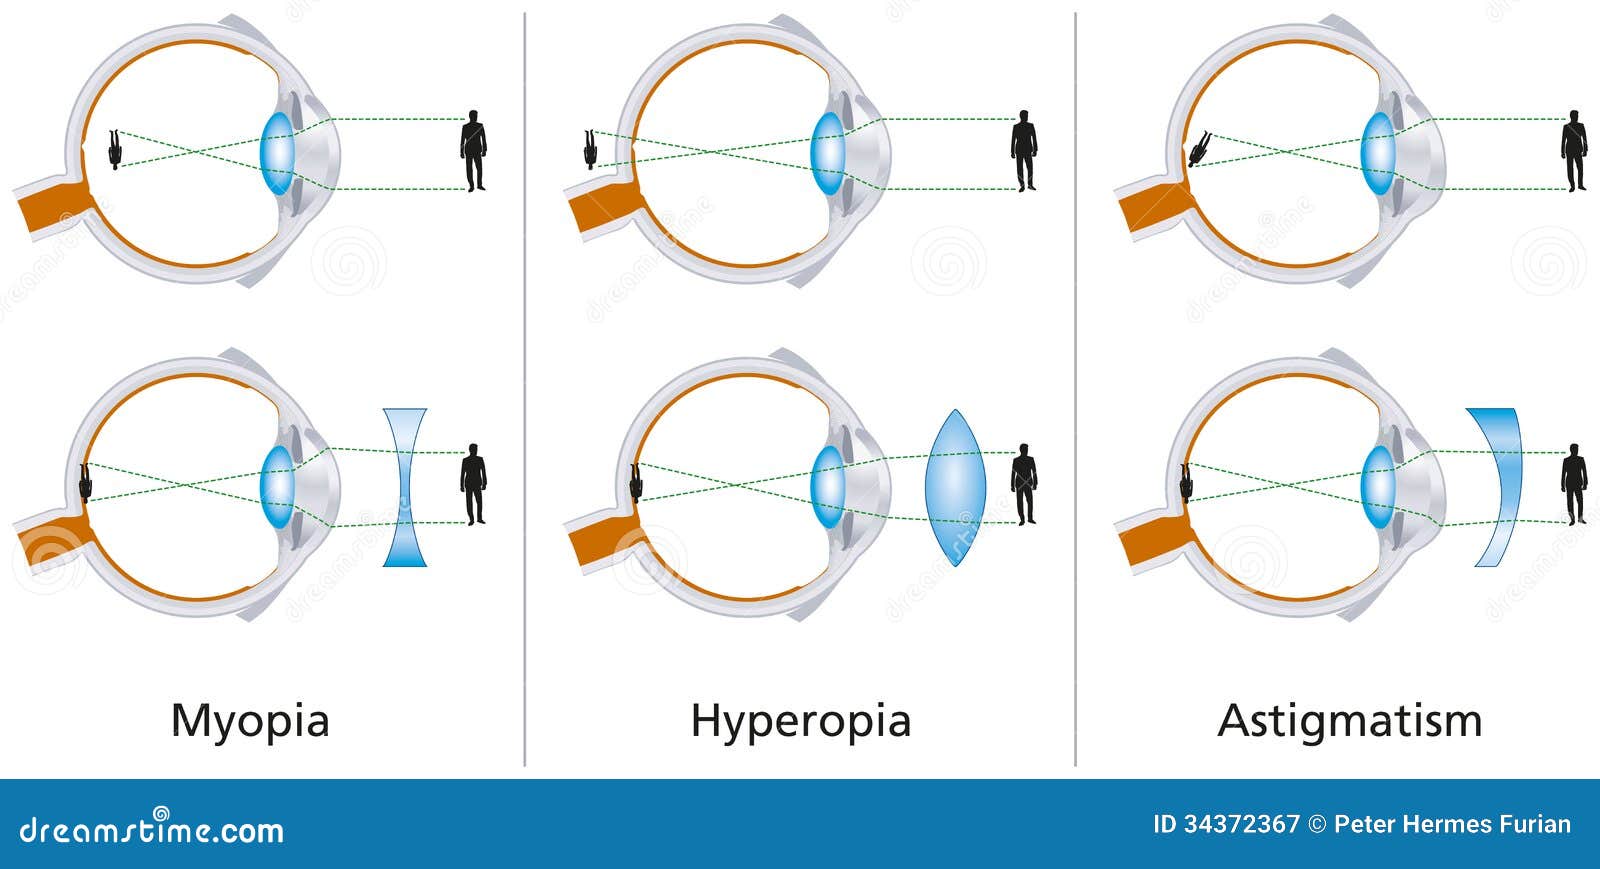 Mi az emberi myopia vagy hyperopia hibája?